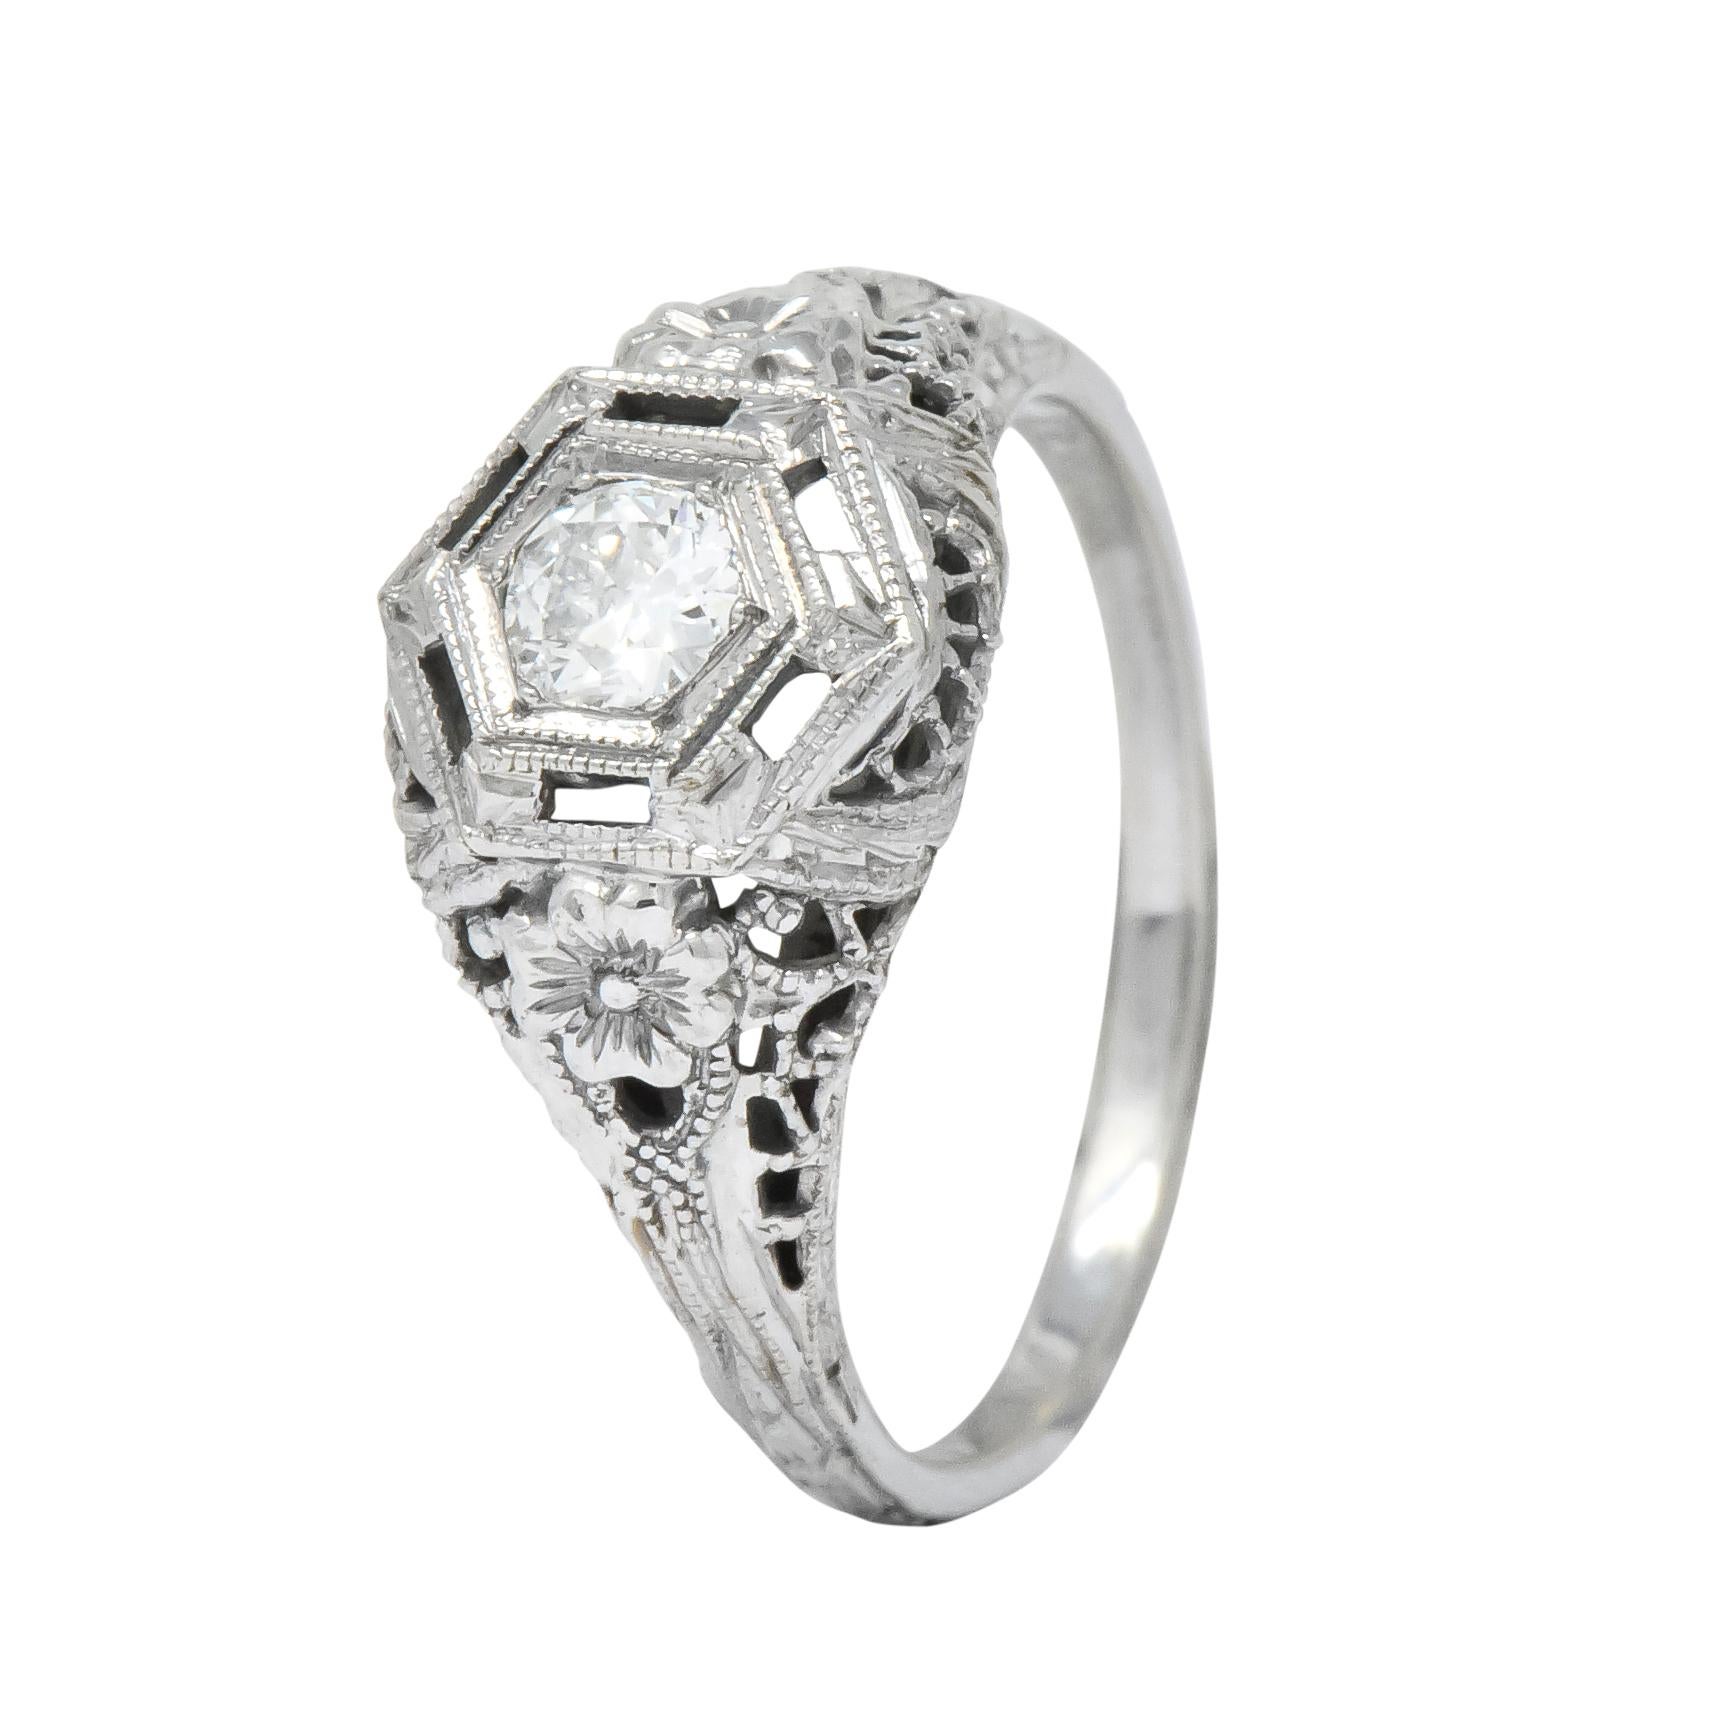 Edwardian Old European Cut Diamond 18 Karat White Gold Engagement Ring 4